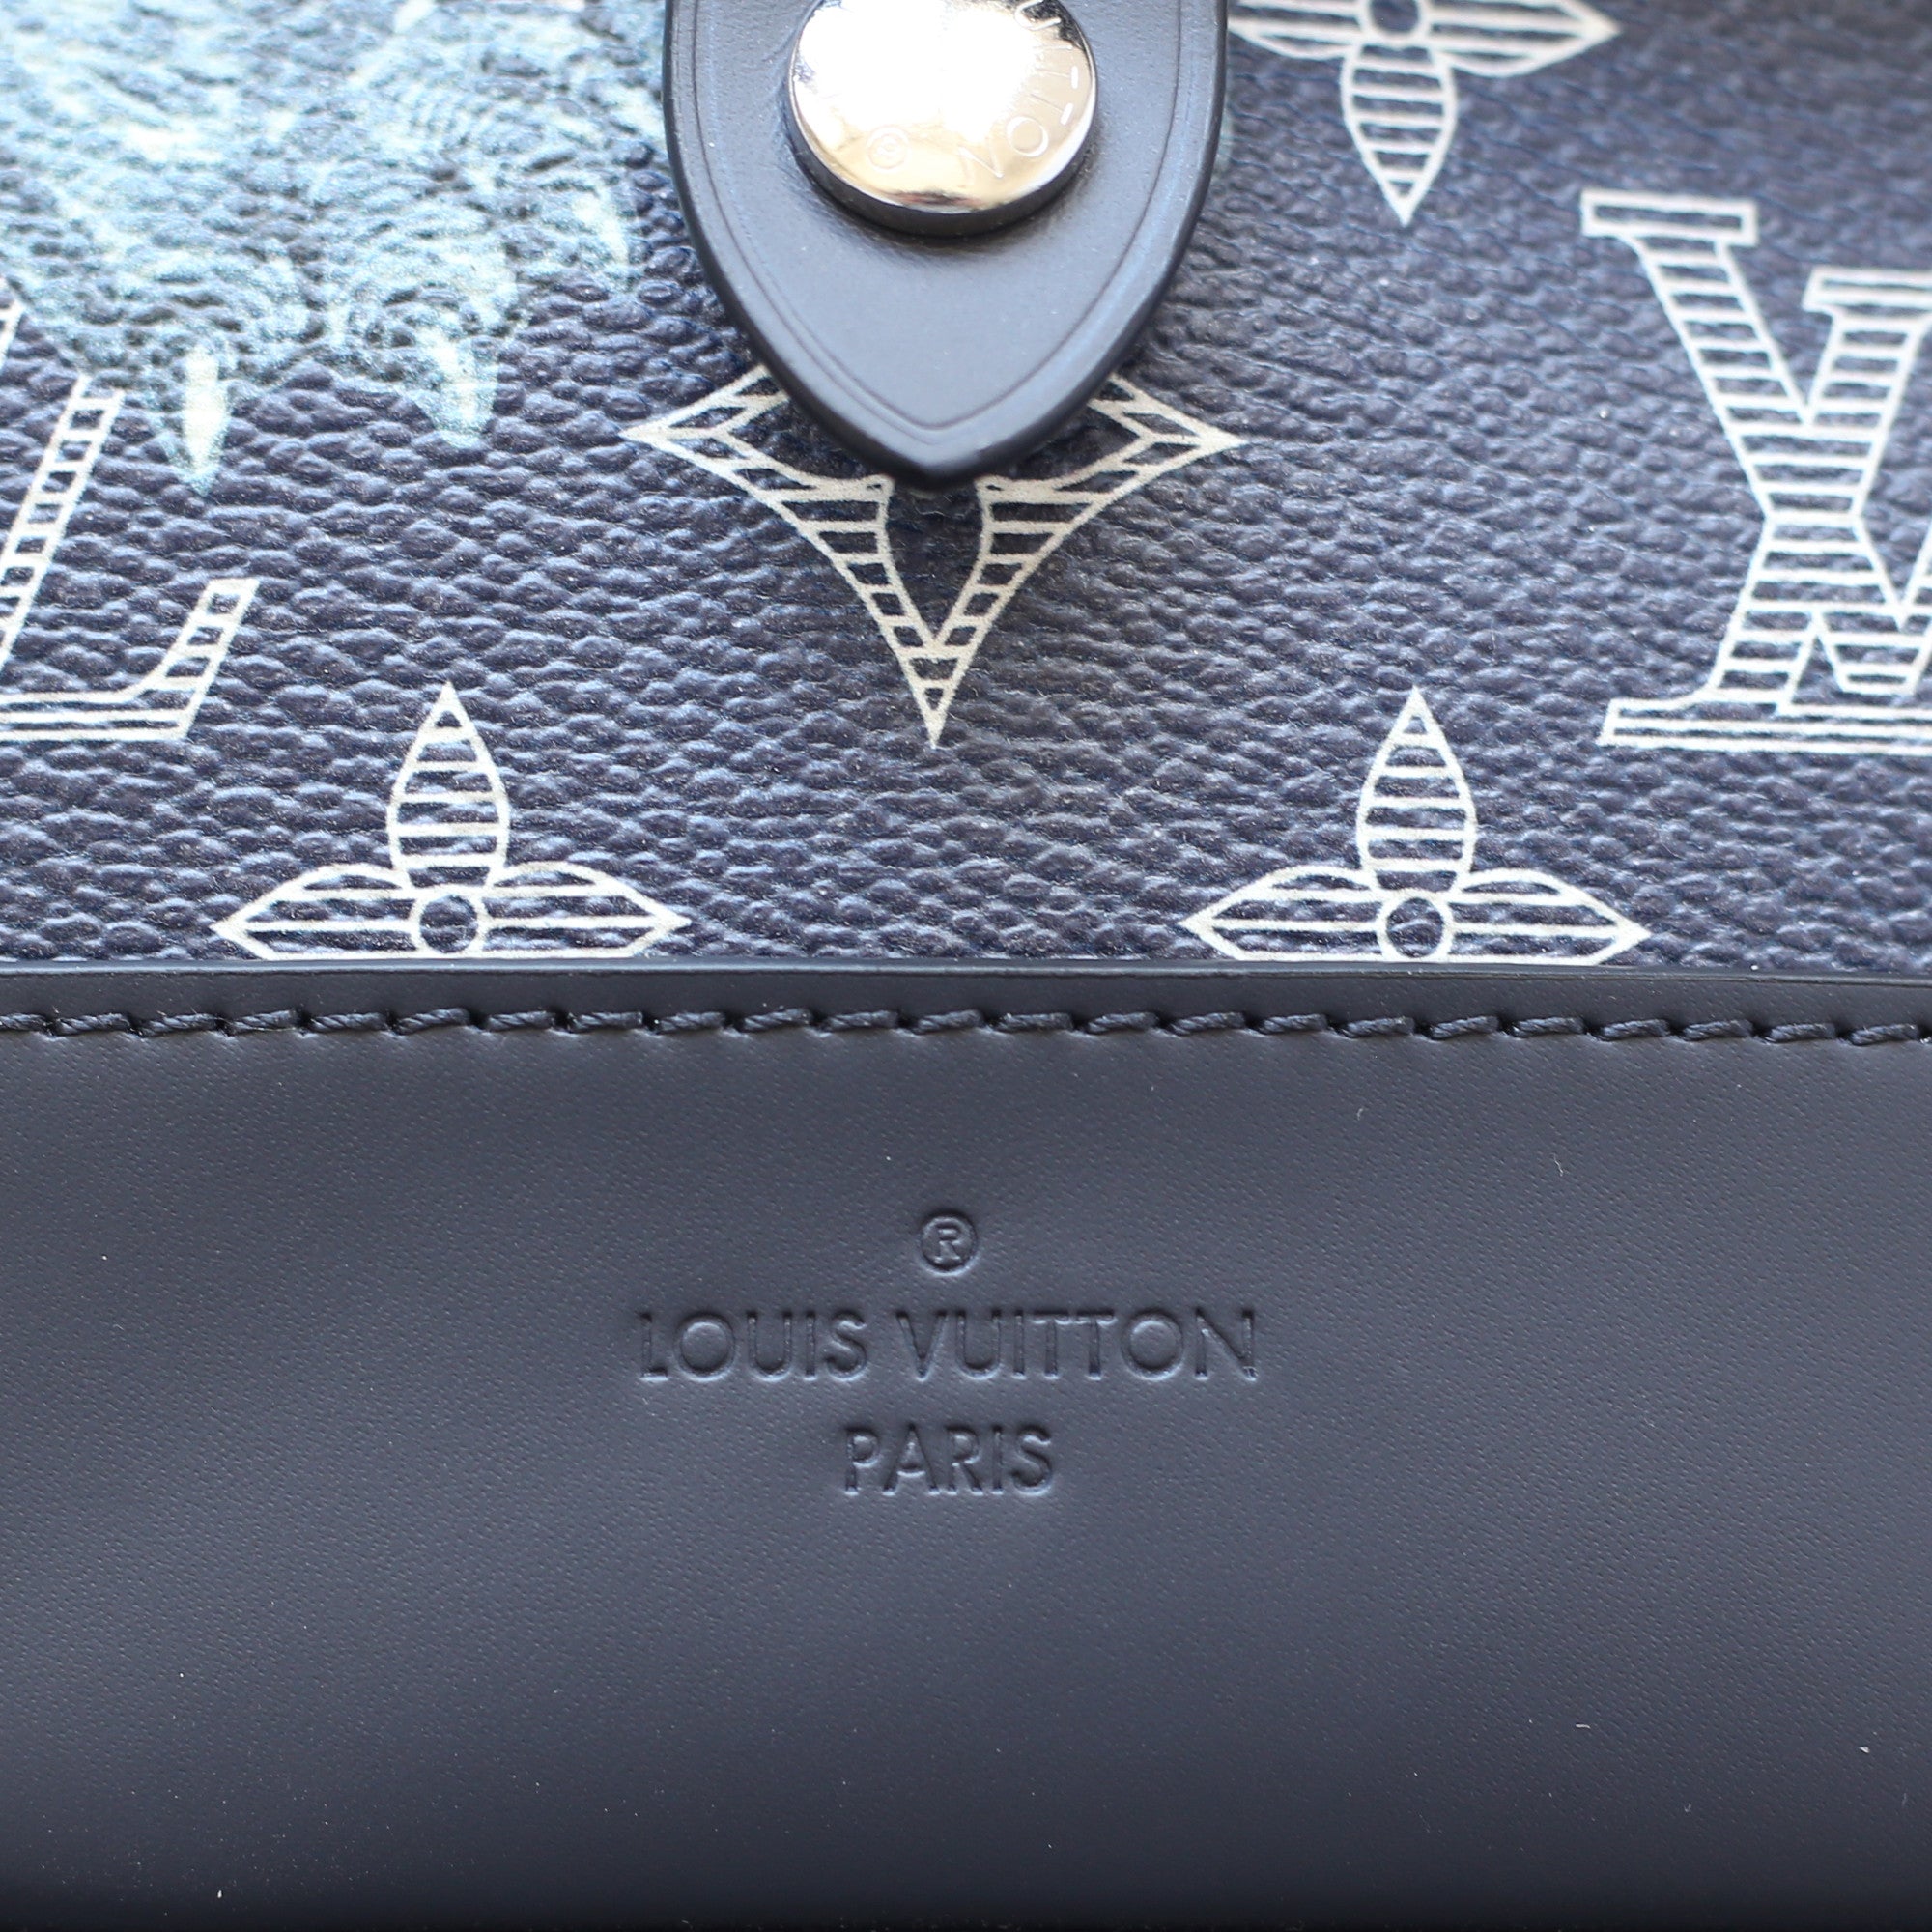 AUTHENTIC Louis Vuitton LV Savane Monogram Lion Chapman Men’s Size 8 (RARE)